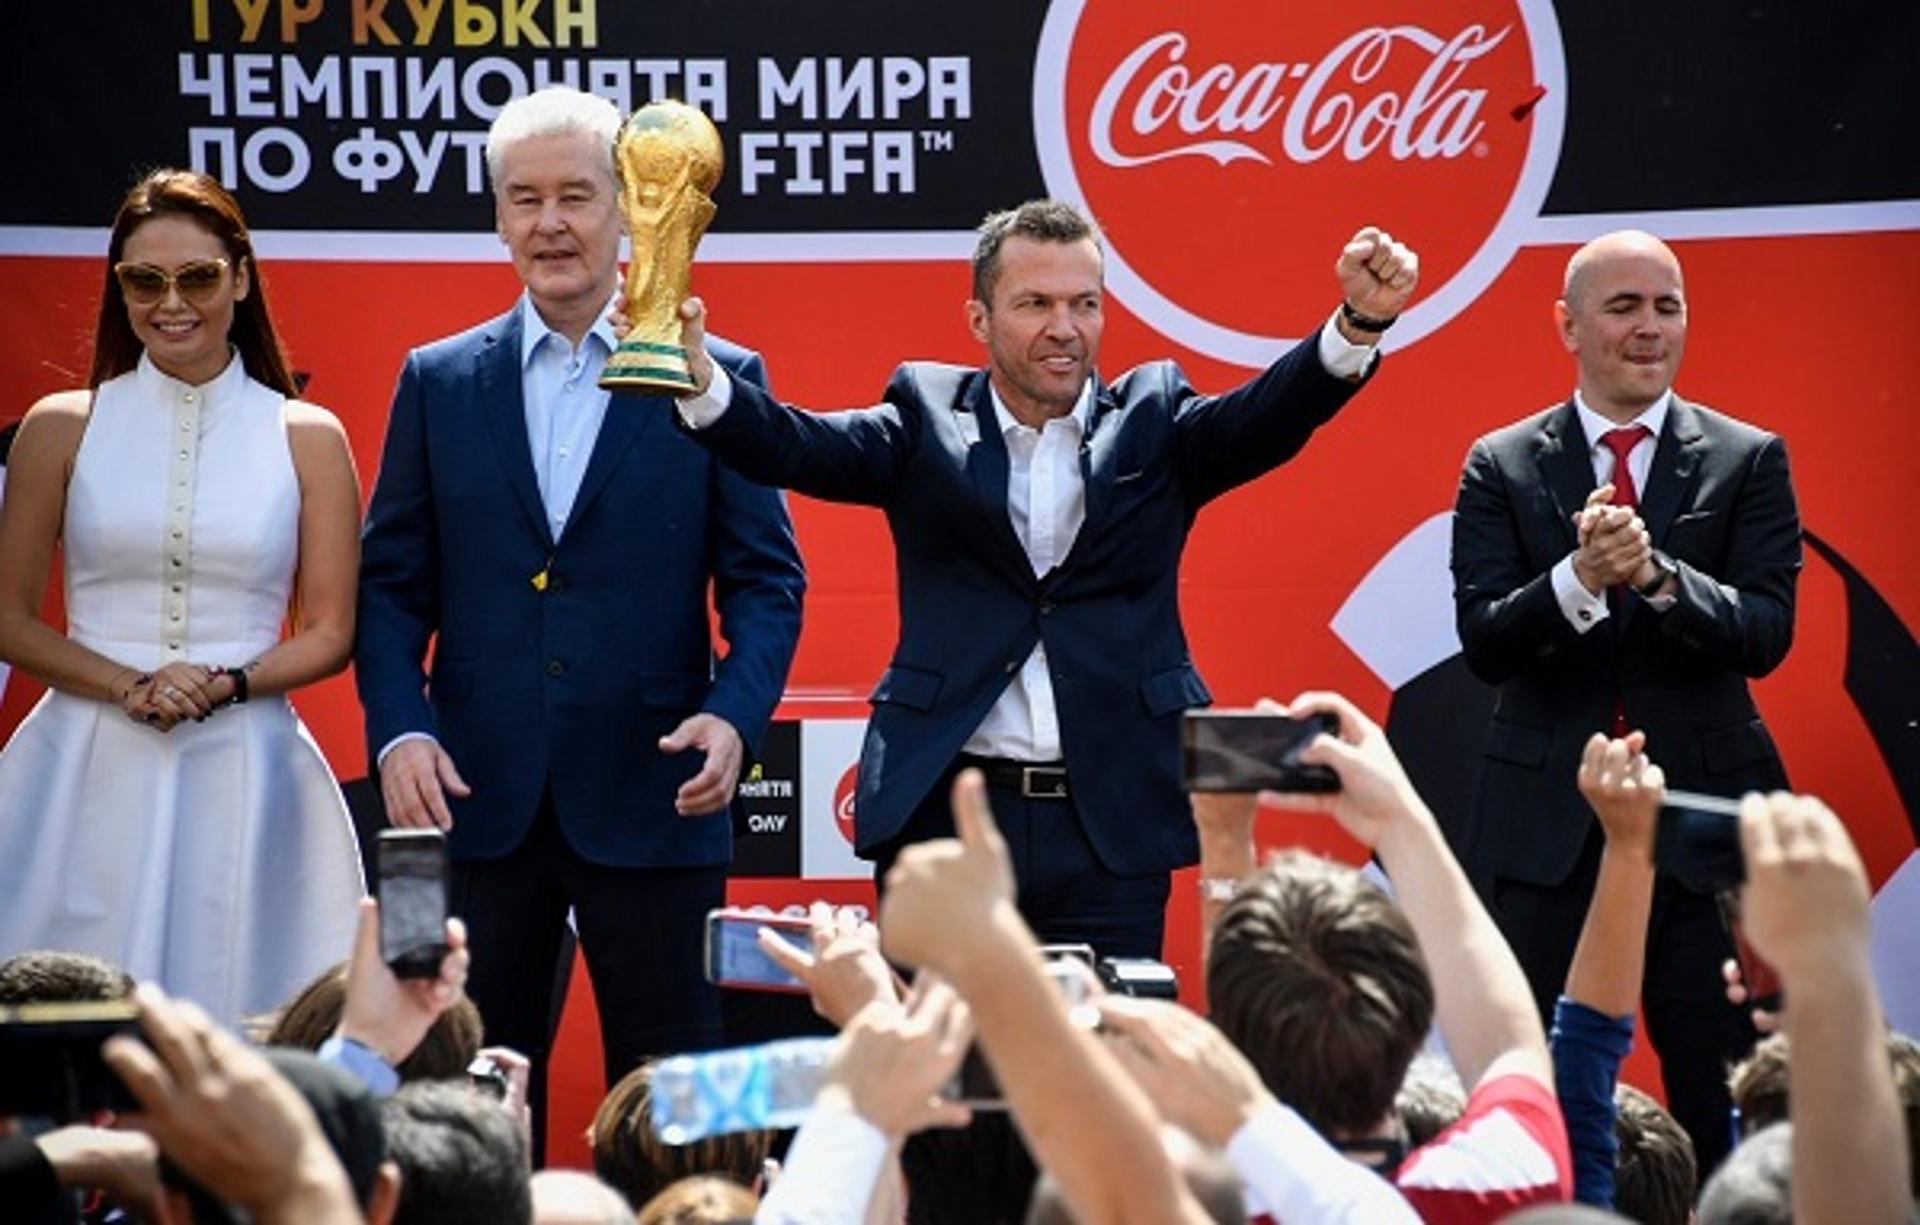 Chegada da Taça do Mundo a Moscou